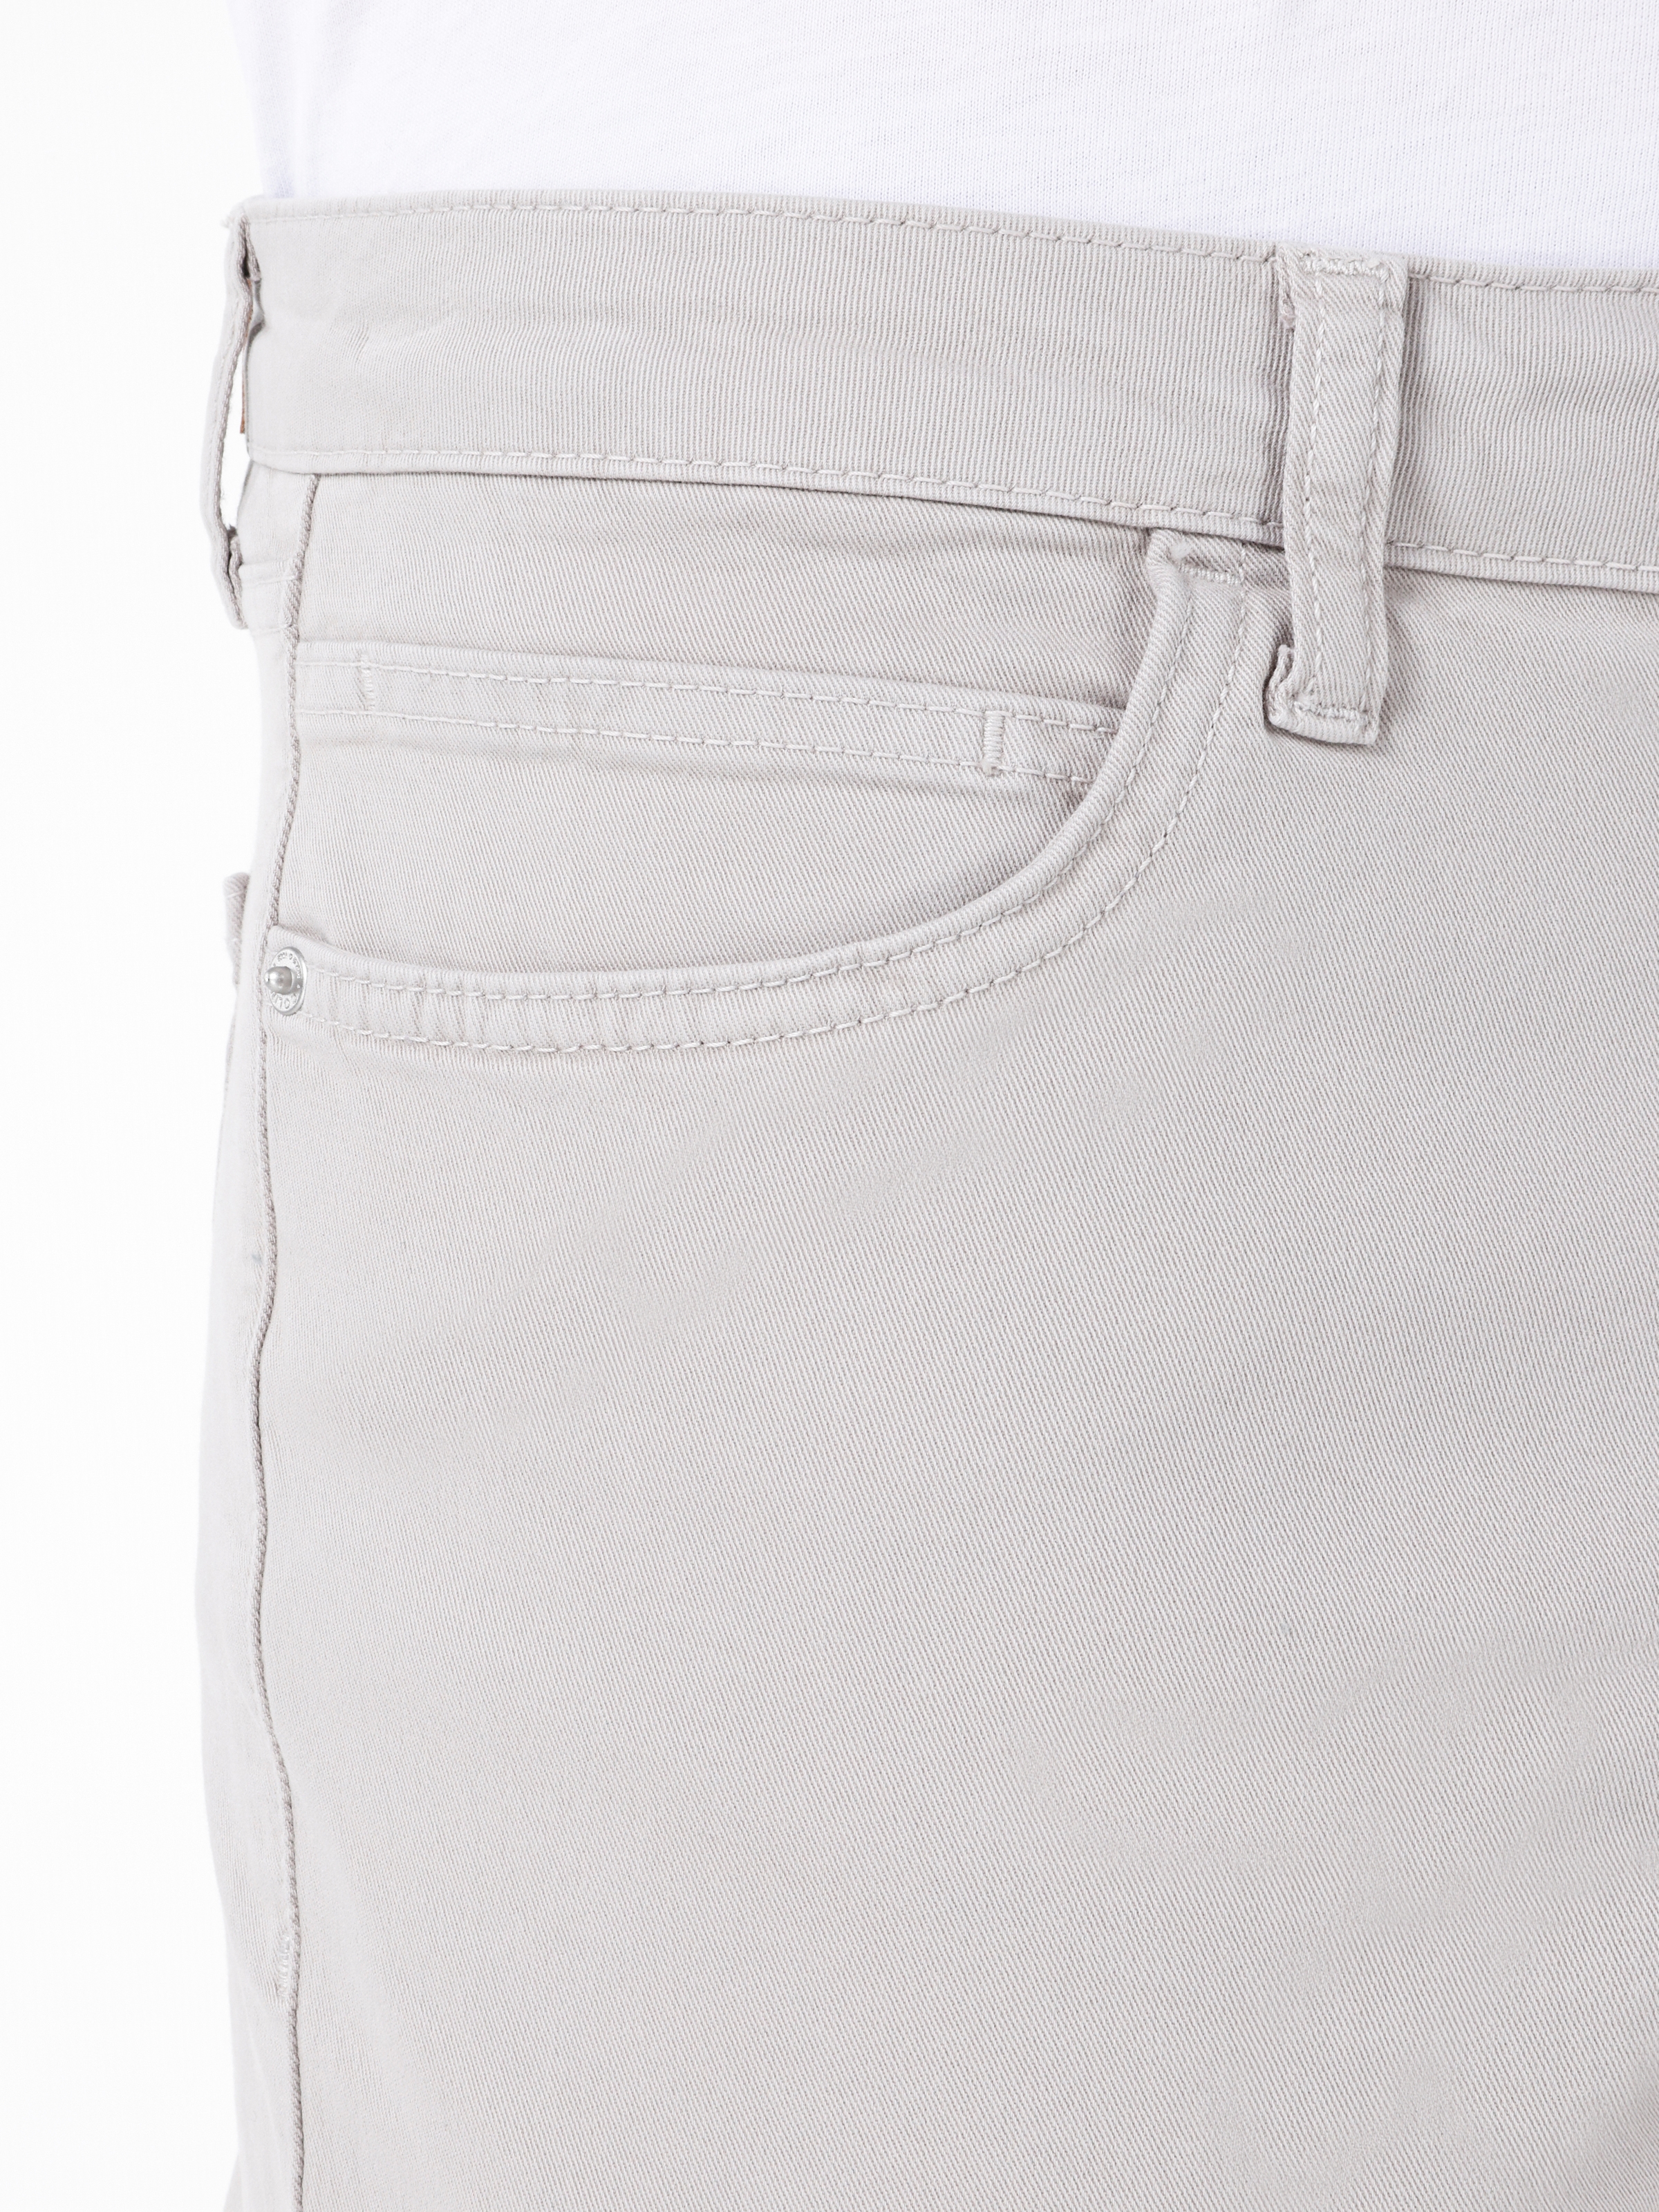 Afficher les détails de Pantalon En Pierre Pour Homme, Coupe Droite, Taille Basse, Jambe Droite